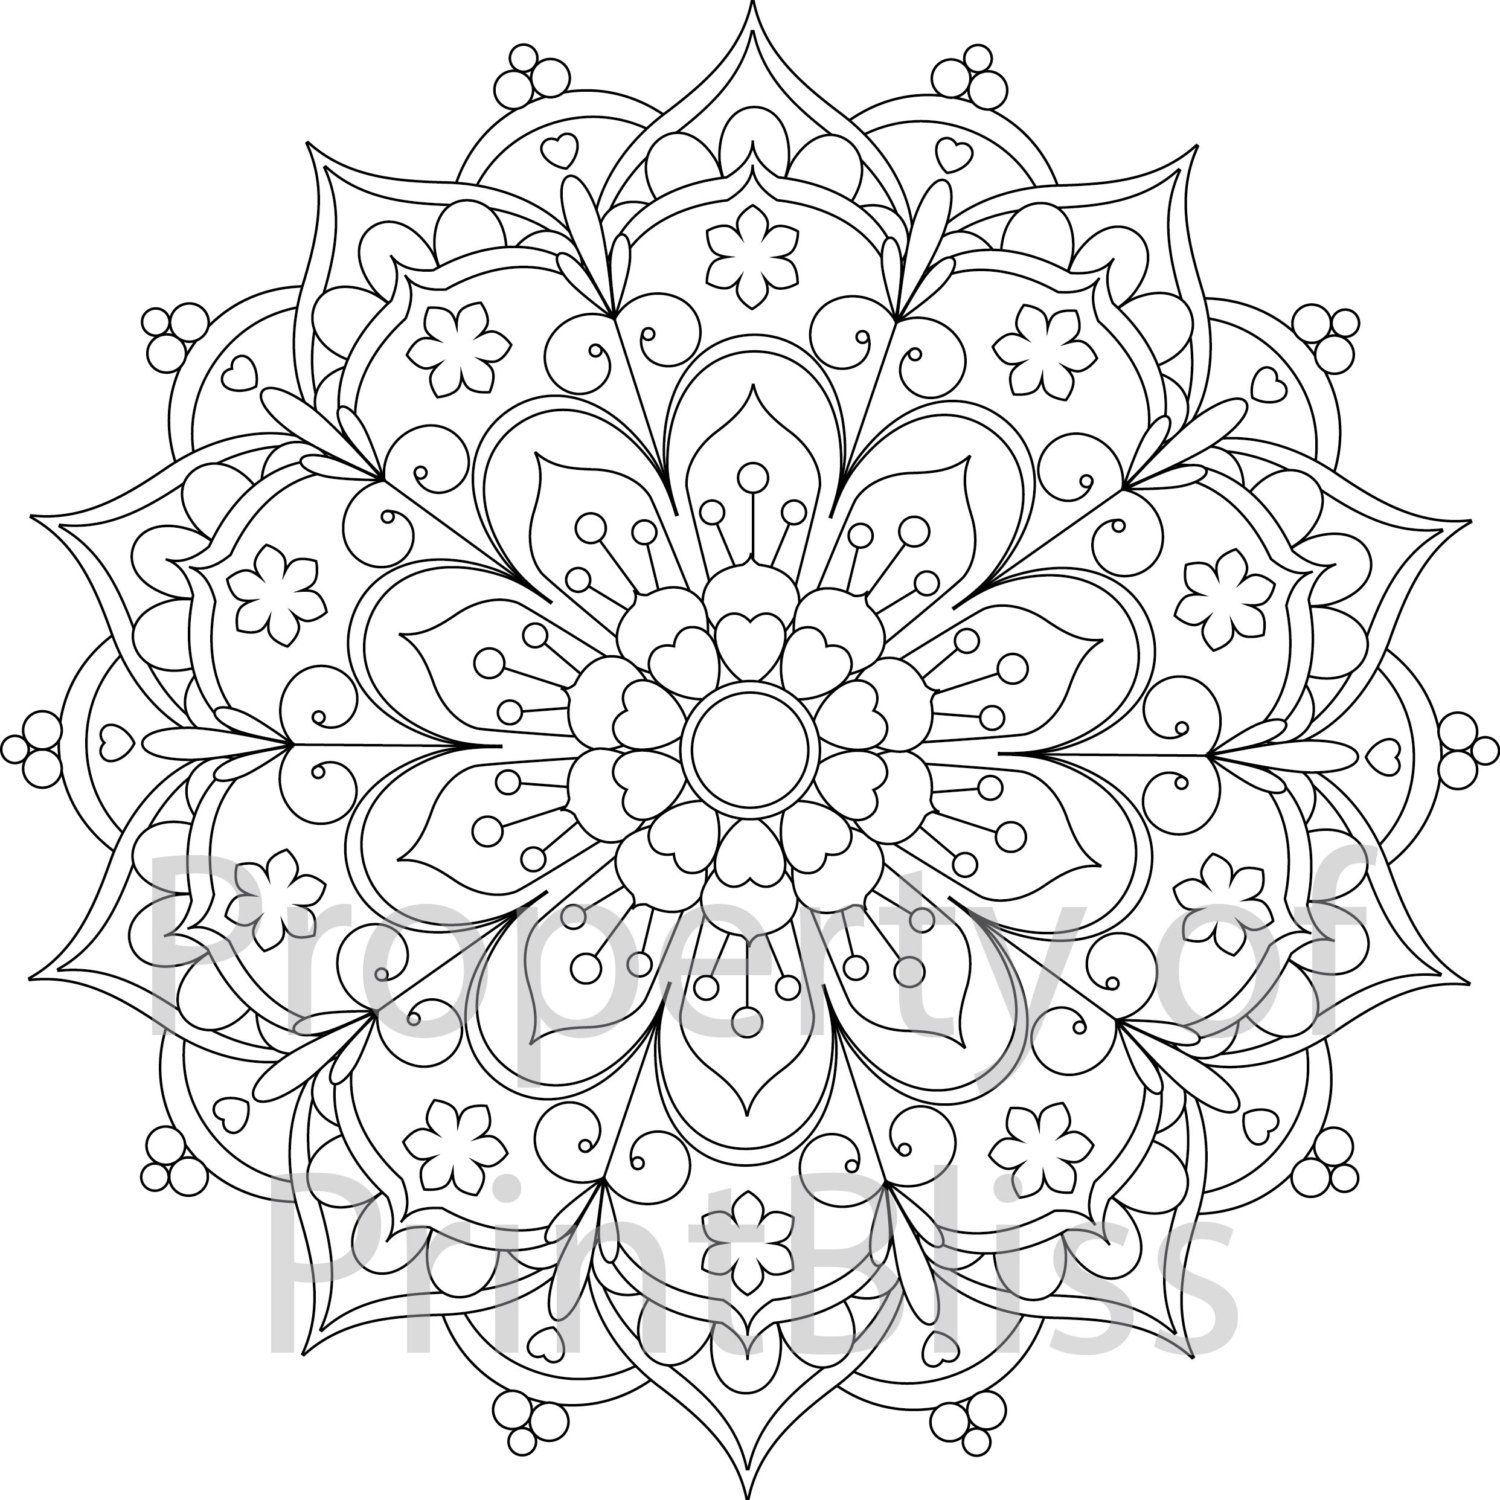 Lotus Flower Mandala Coloring Pages at GetColorings.com | Free